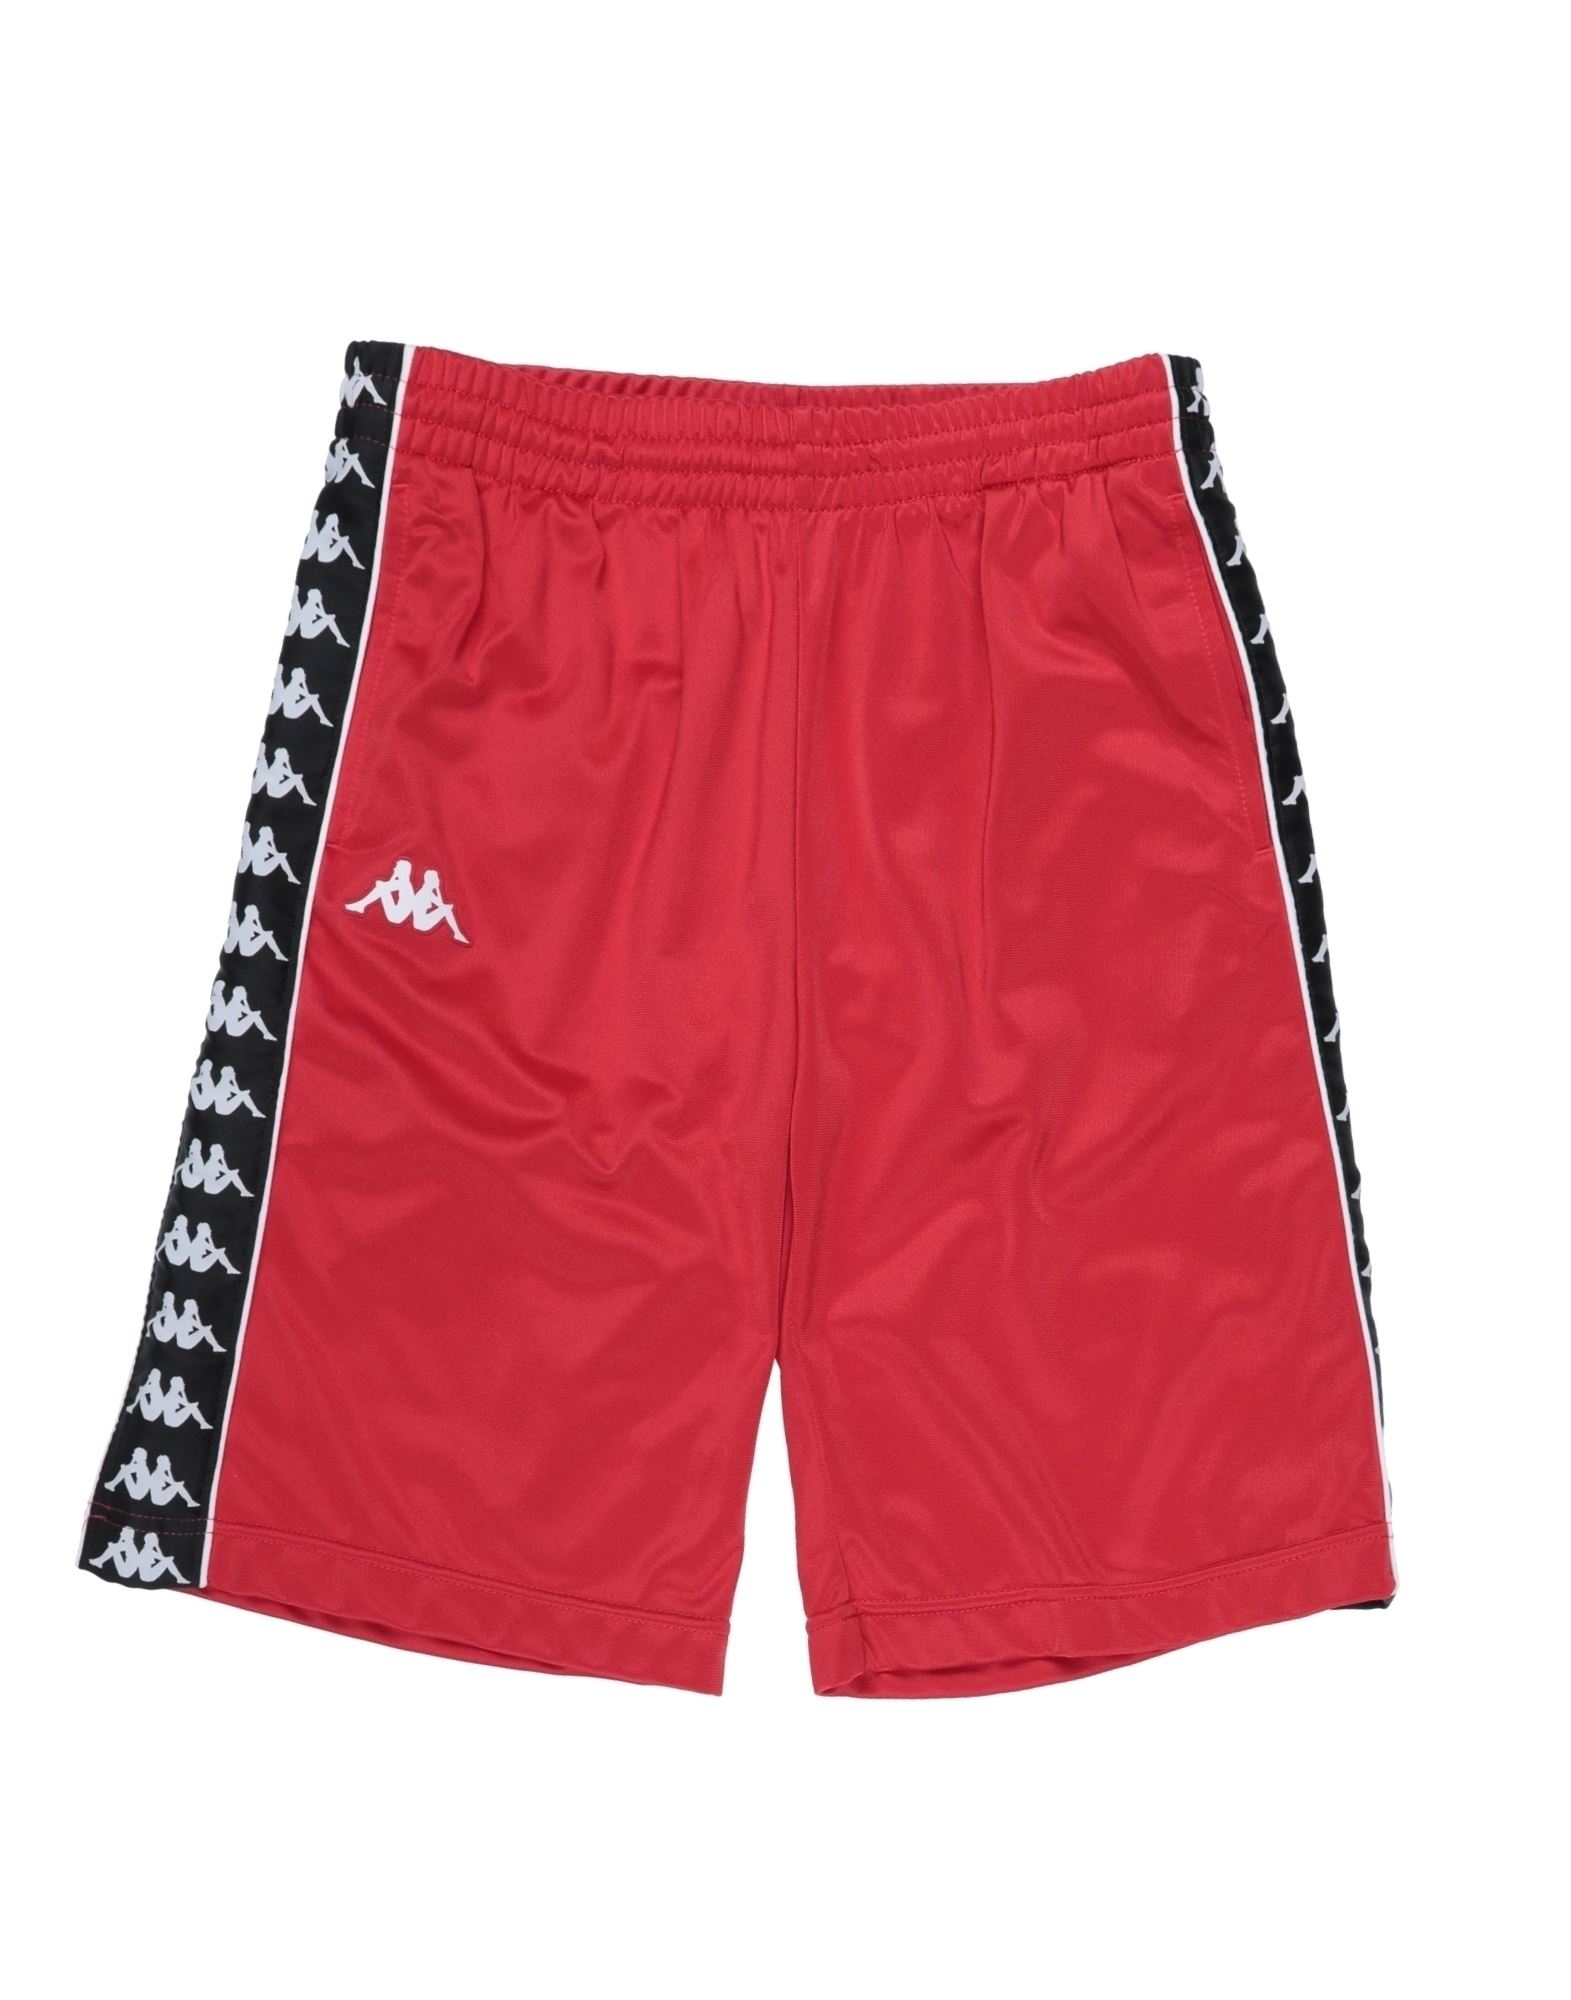 Kappa Kids'  Toddler Boy Shorts & Bermuda Shorts Red Size 6 Polyester